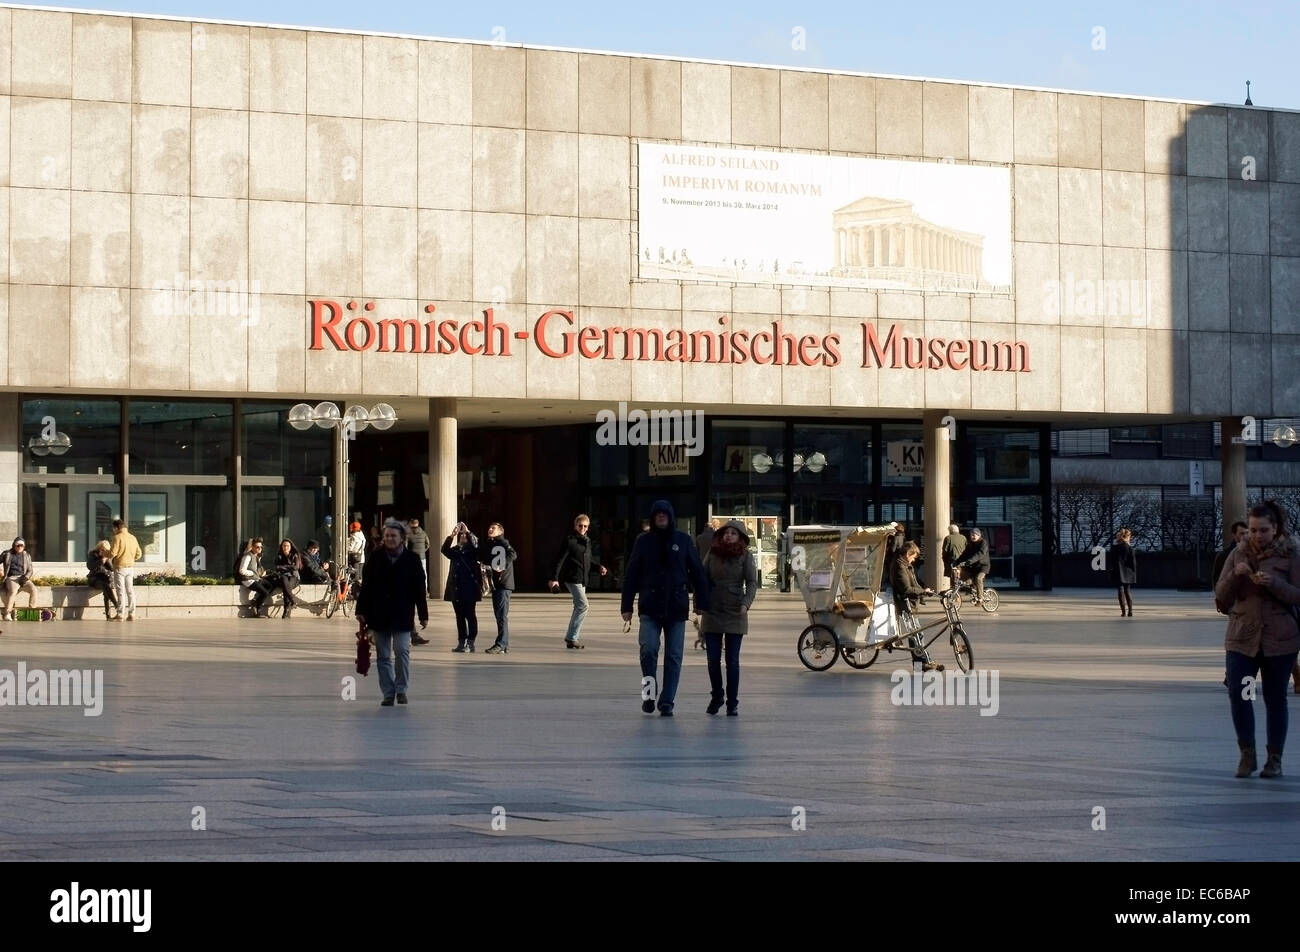 Germanique de Cologne Musée Romano Banque D'Images